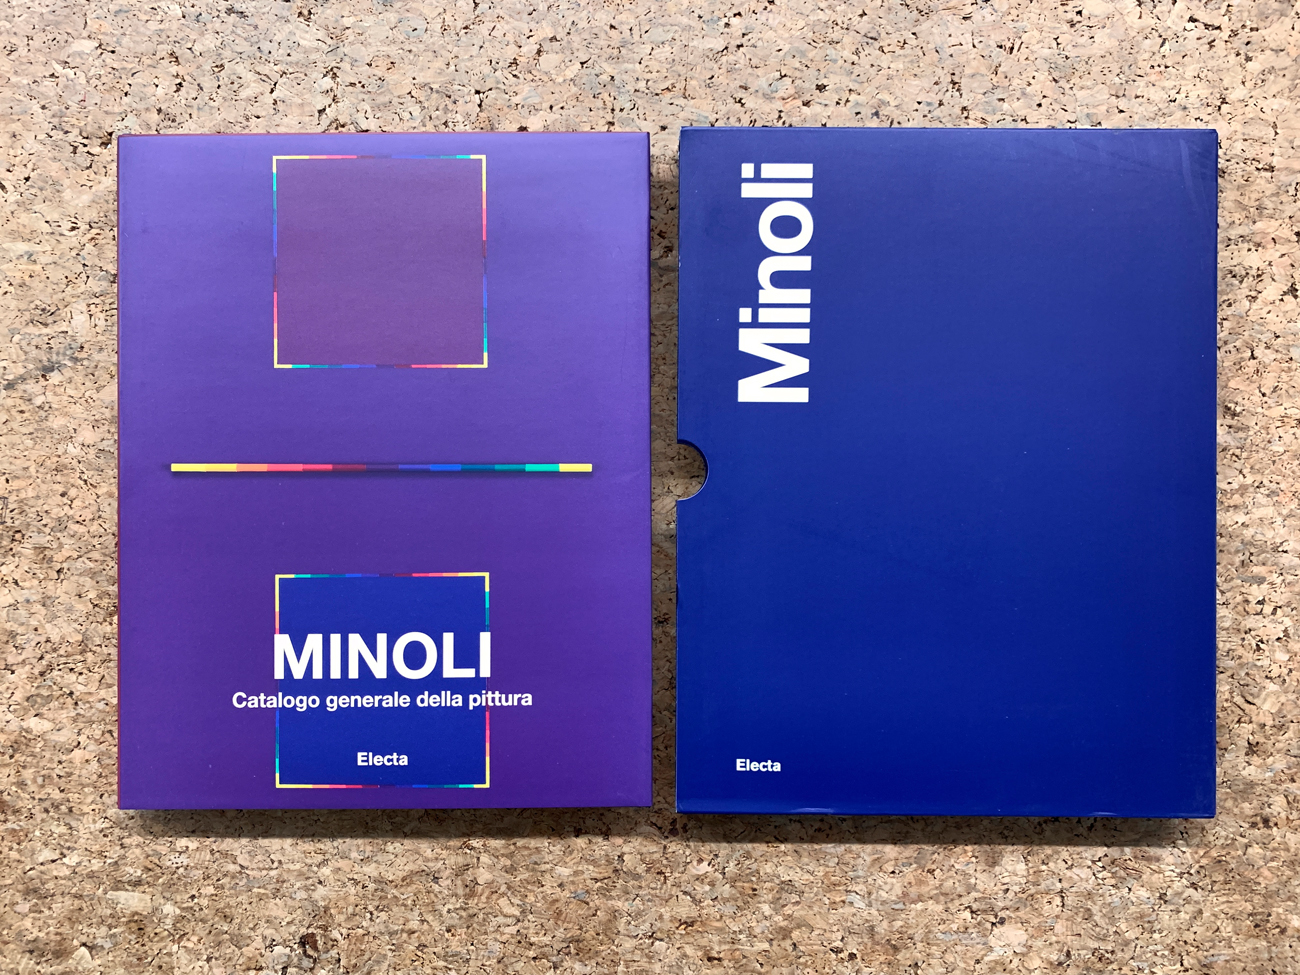 PAOLO MINOLI - Minoli. Catalogo generale della pittura. Volume secondo 1980-1992, 2019